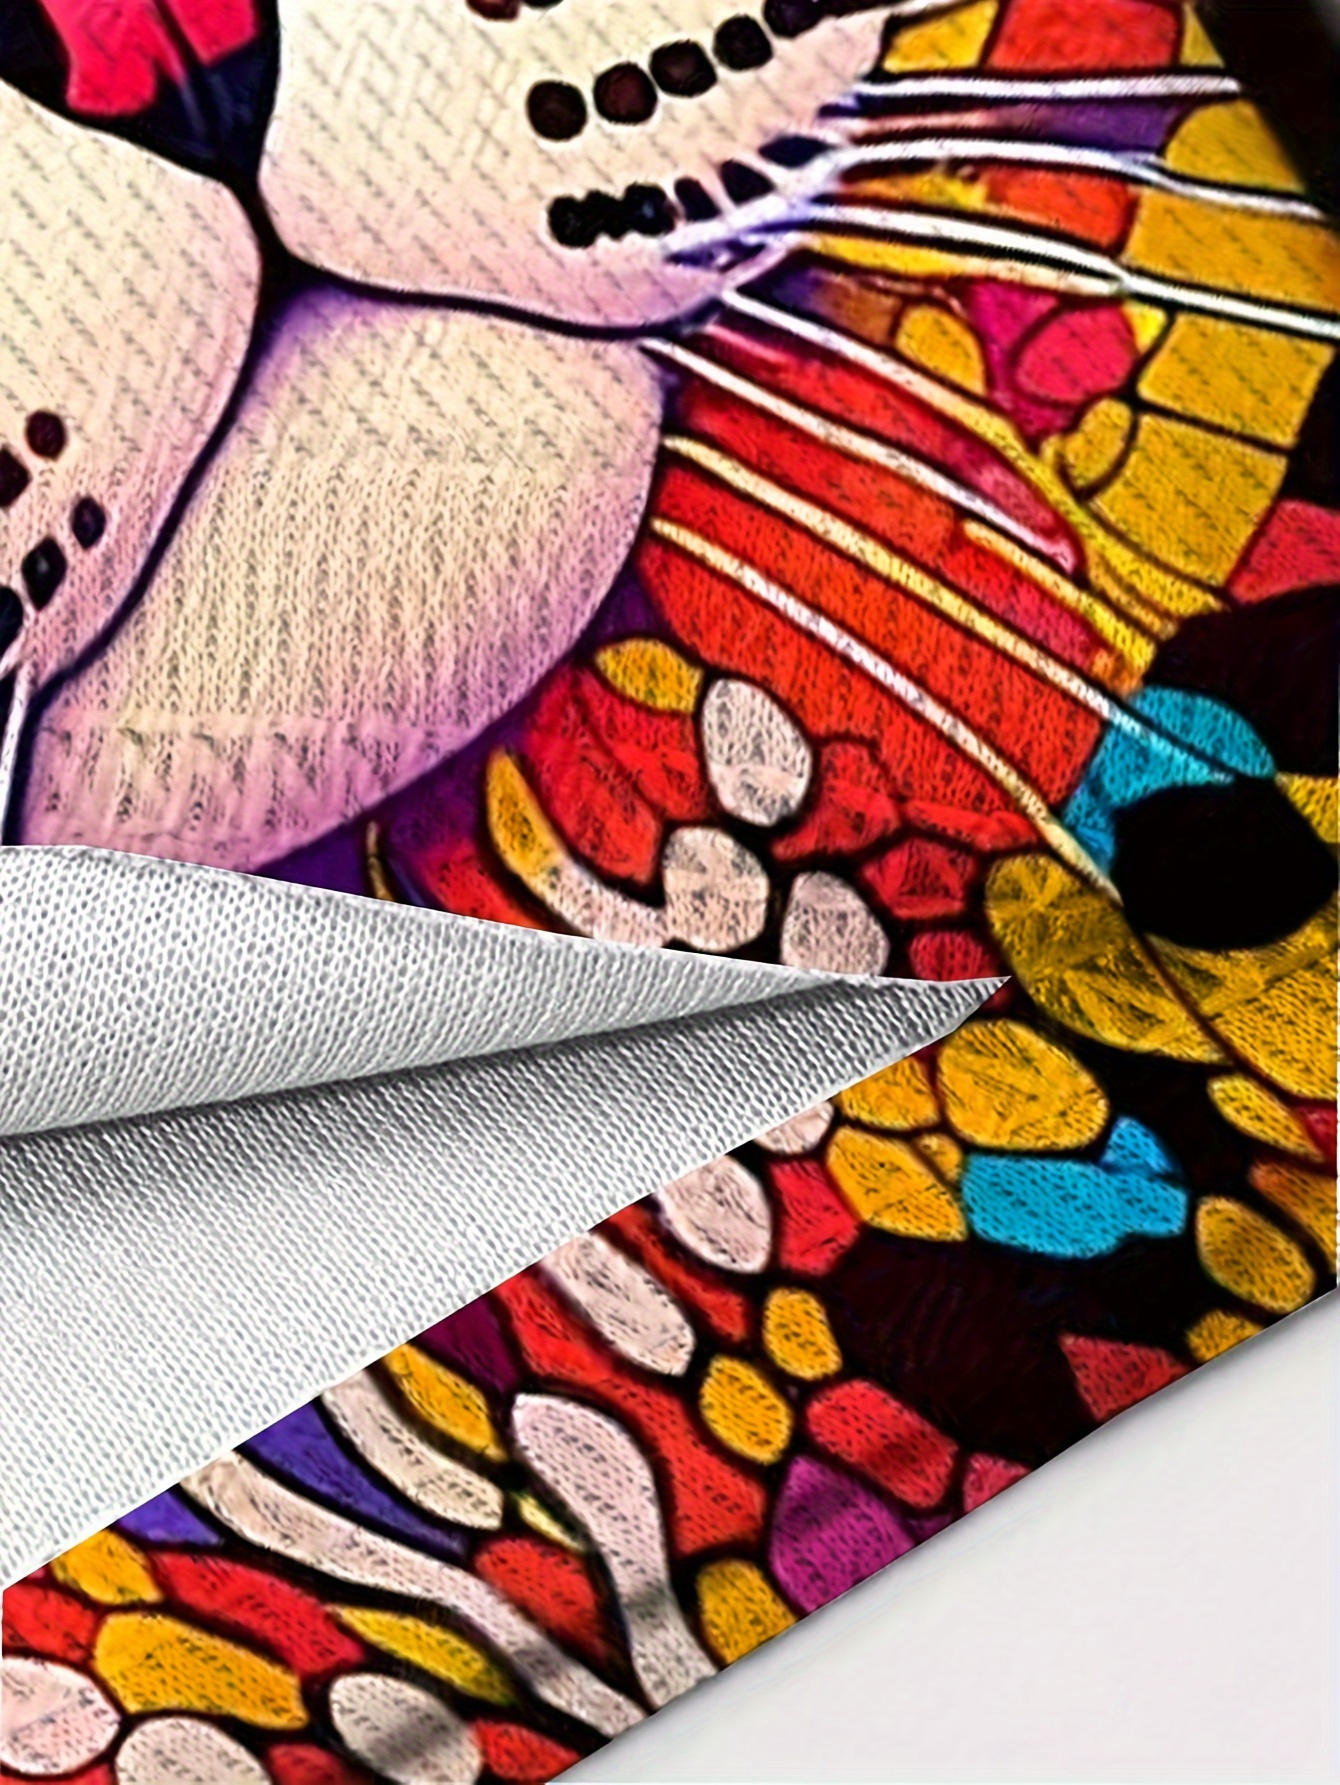 Colorful Art Cat 3d Digital Pattern Print Men's Graphic T - Temu